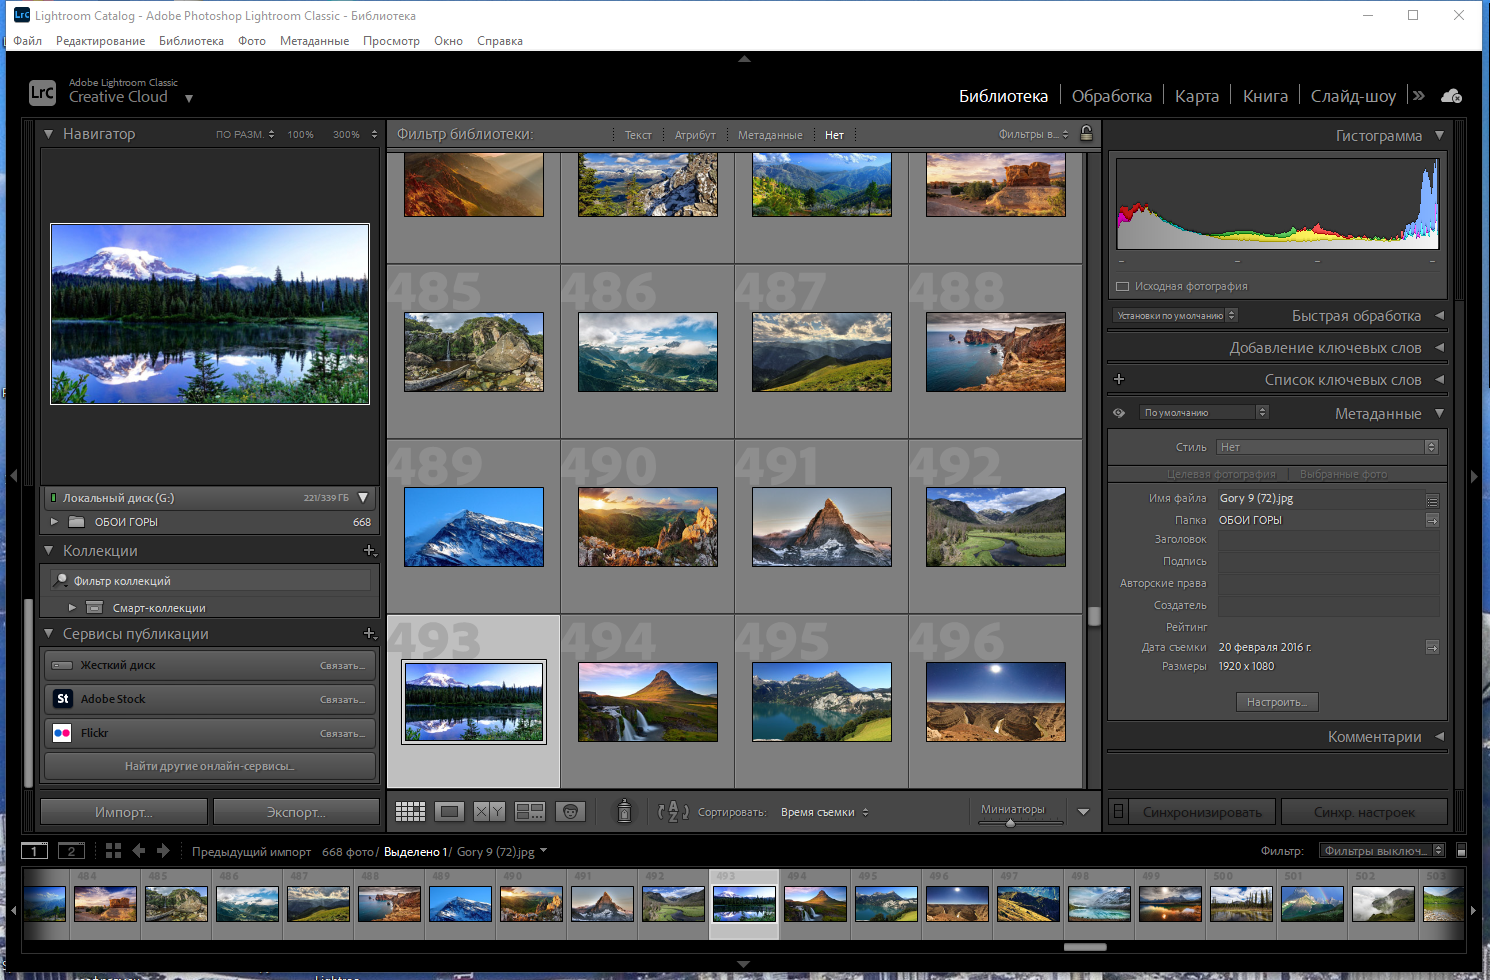 Adobe Photoshop Lightroom Classic 11.3.0.9 RePack by KpoJIuK [Multi/Ru]